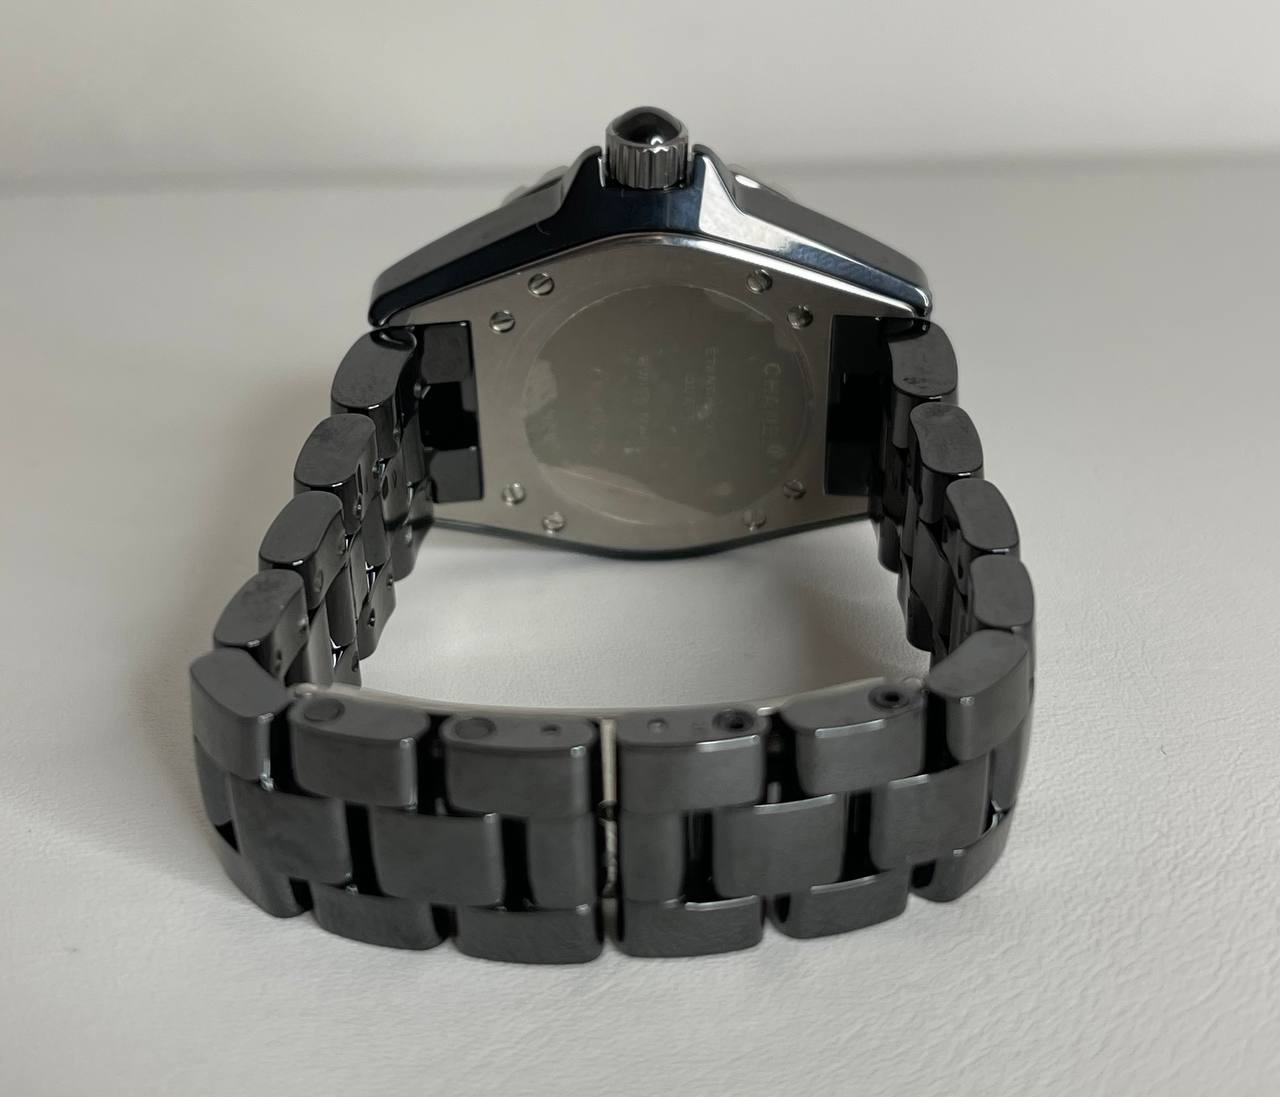 Часы Chanel J12 Quartz H0949